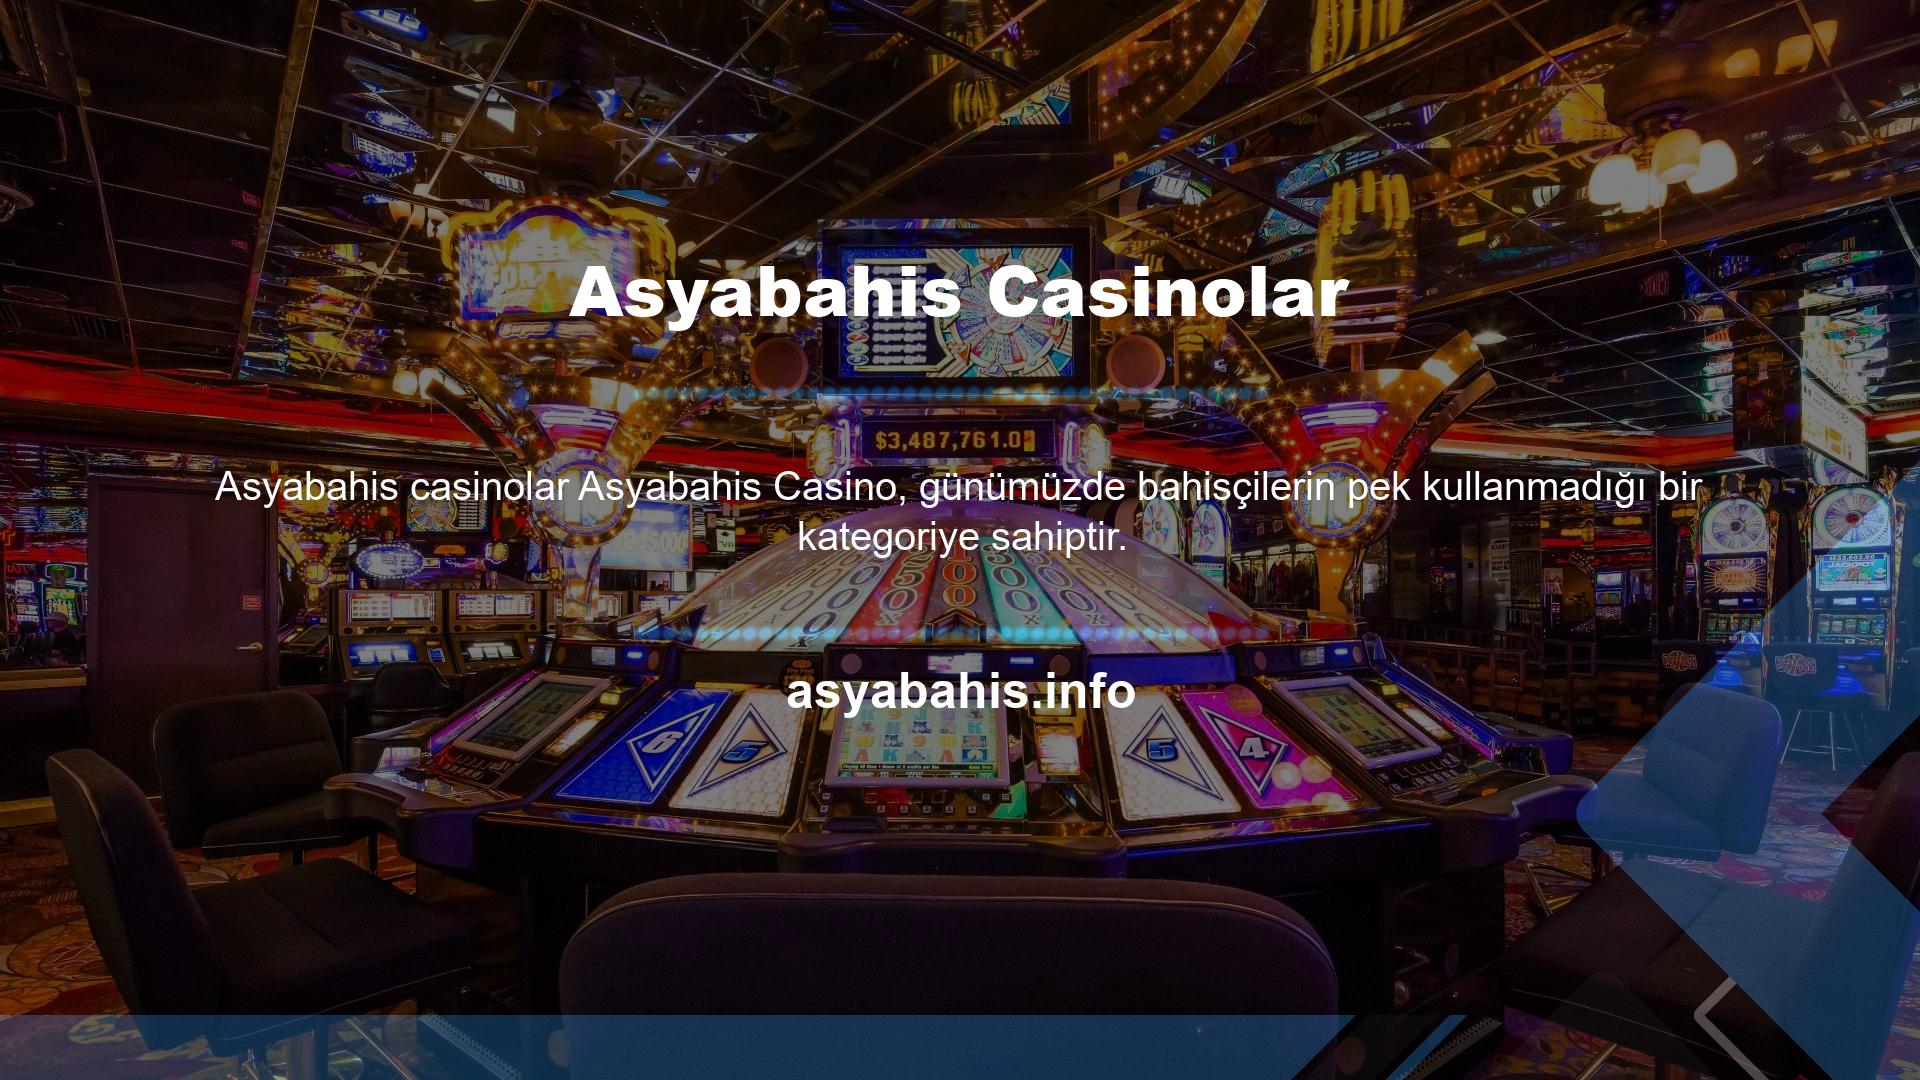 Casinolar sektörü, casino siteleri tarafından daha az kullanılır ancak eğlence ile ilgili ekonomik bir sektör olarak da görülebilir